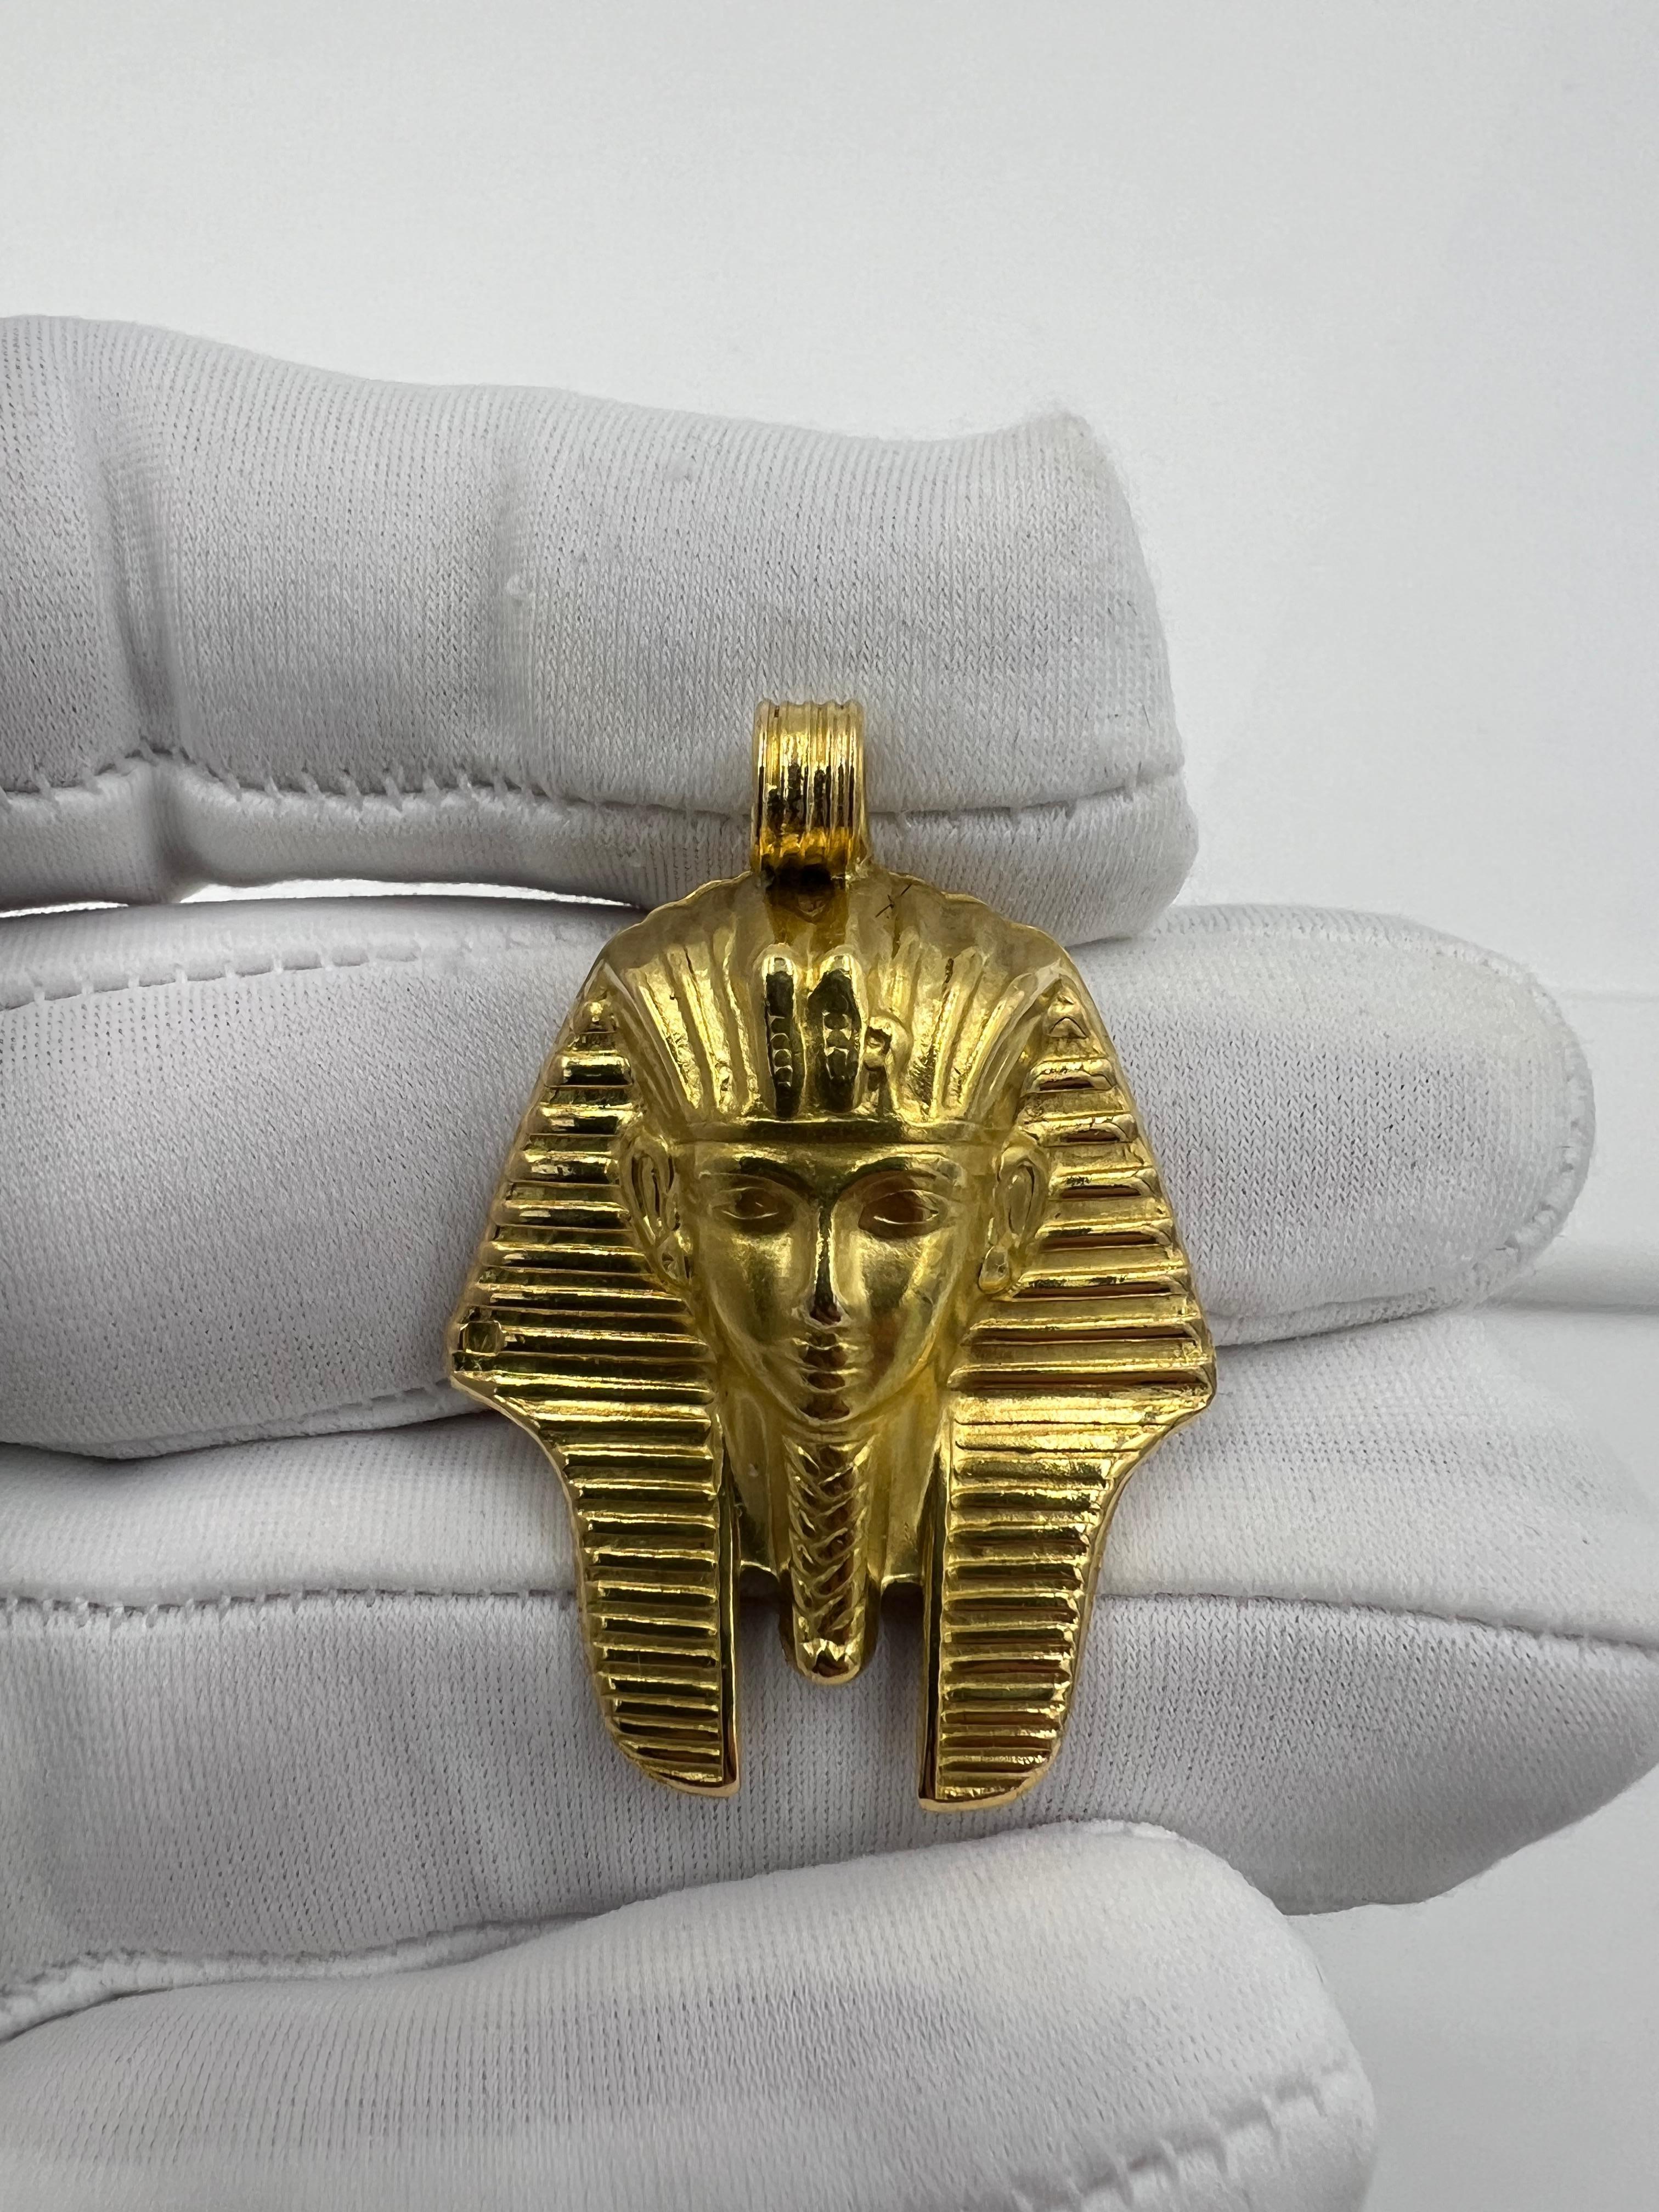 Ägyptischer Revive Gelbgold-Anhänger

ÜBER DIESEN ARTIKEL: P-DJ1030I  Dieser ägyptische Gelbgold-Anhänger von König Tut ist ein atemberaubendes Schmuckstück, das nicht nur die reiche Geschichte und Kultur des alten Ägyptens verkörpert, sondern auch